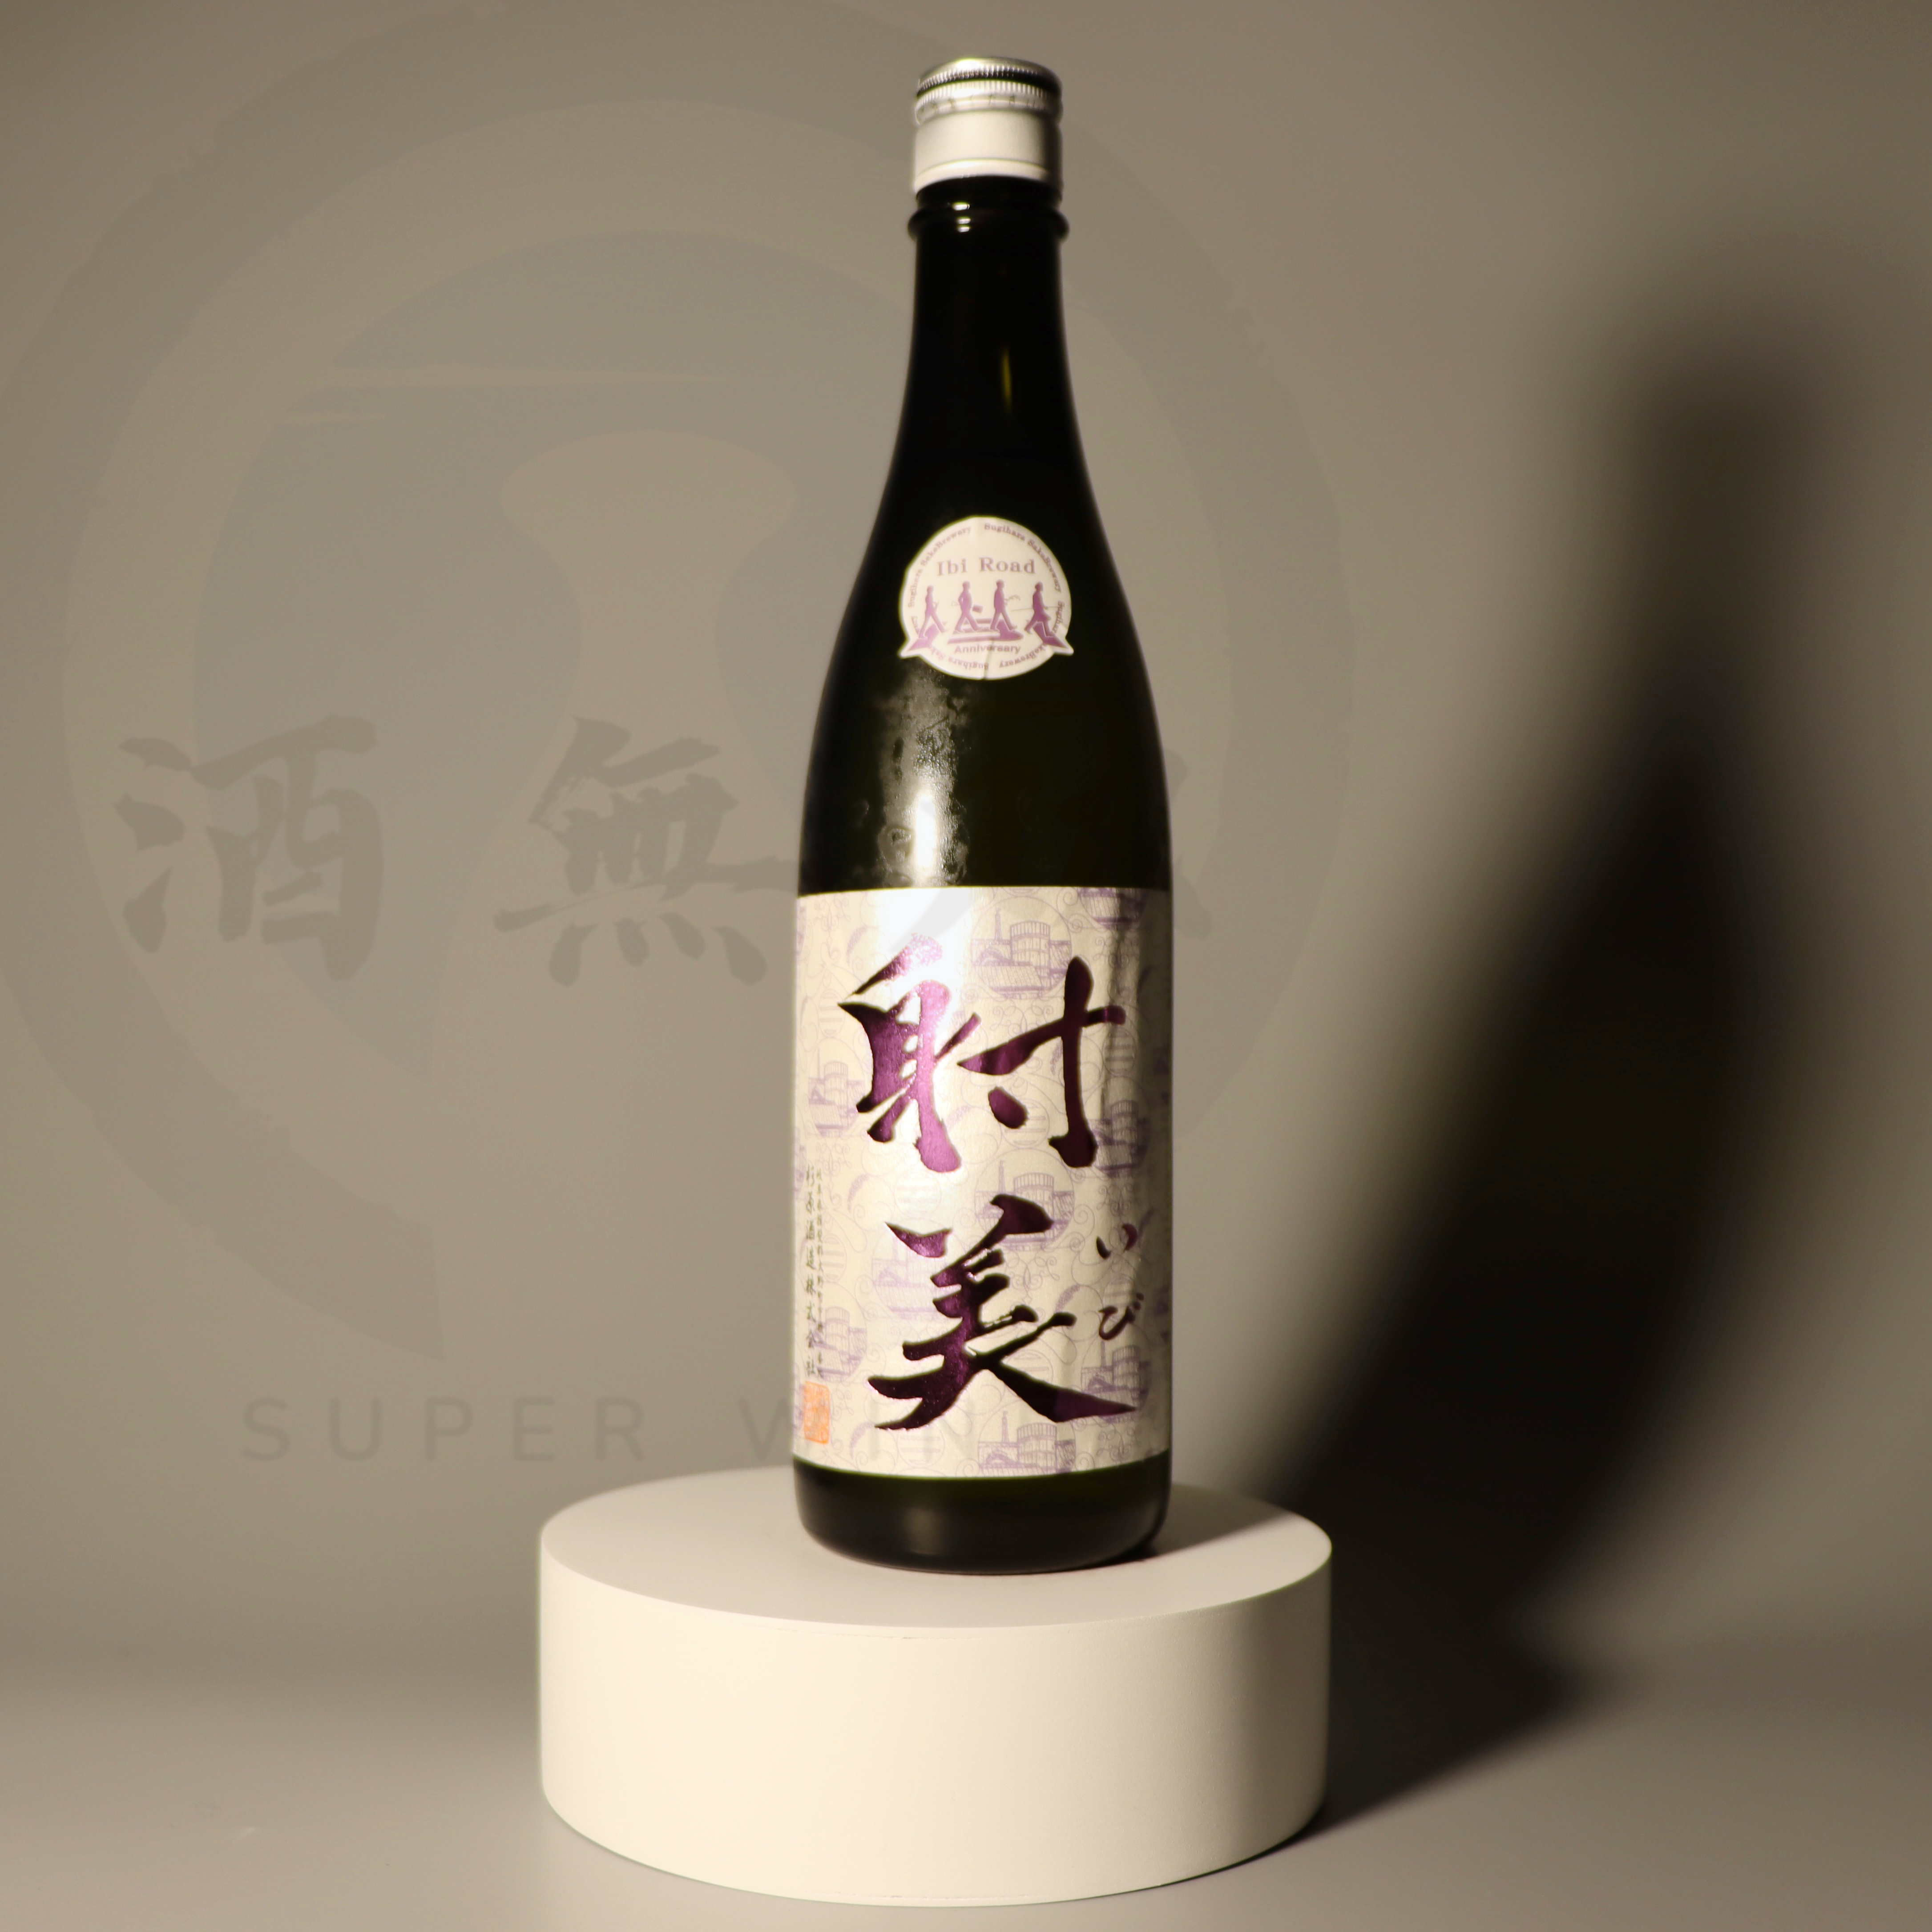 射美 720ml - 日本酒